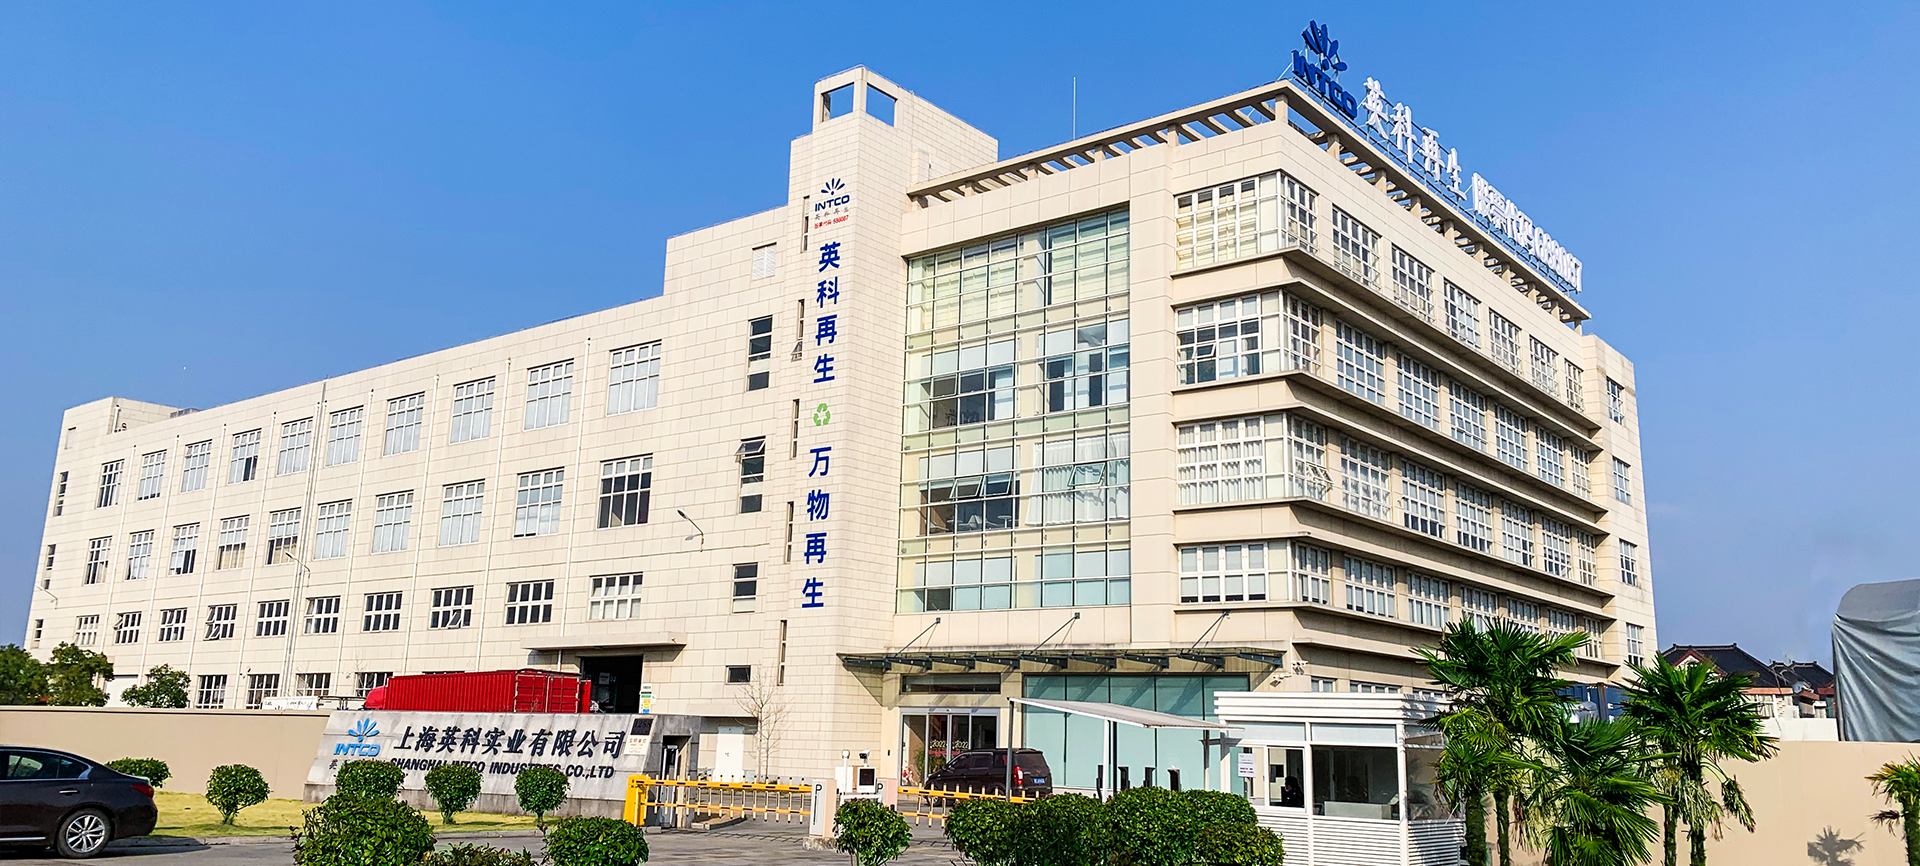 上海英科是意昂体育二第2大造粒、框条及成品框类产品的生产基地